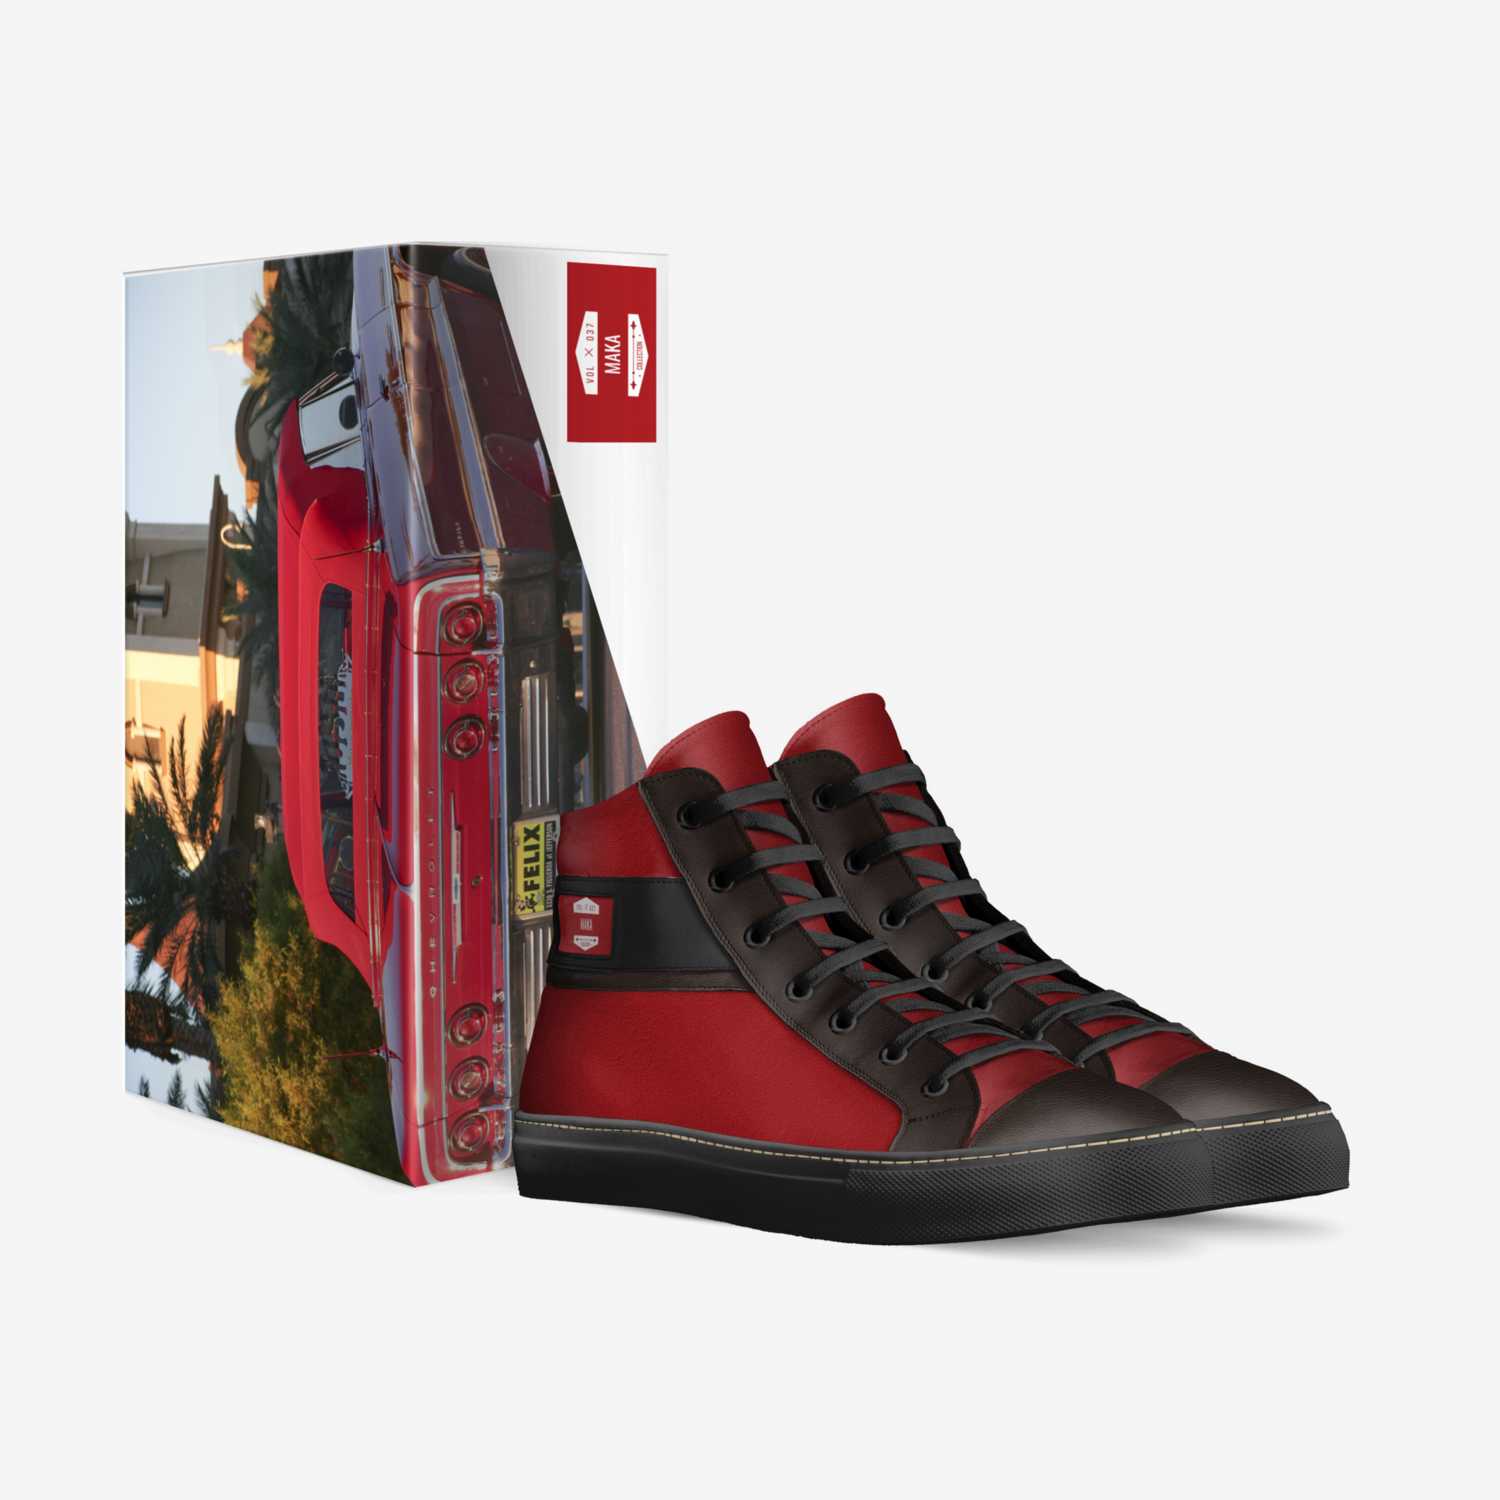 Maka custom made in Italy shoes by Paul Stephen Neru Maka | Box view